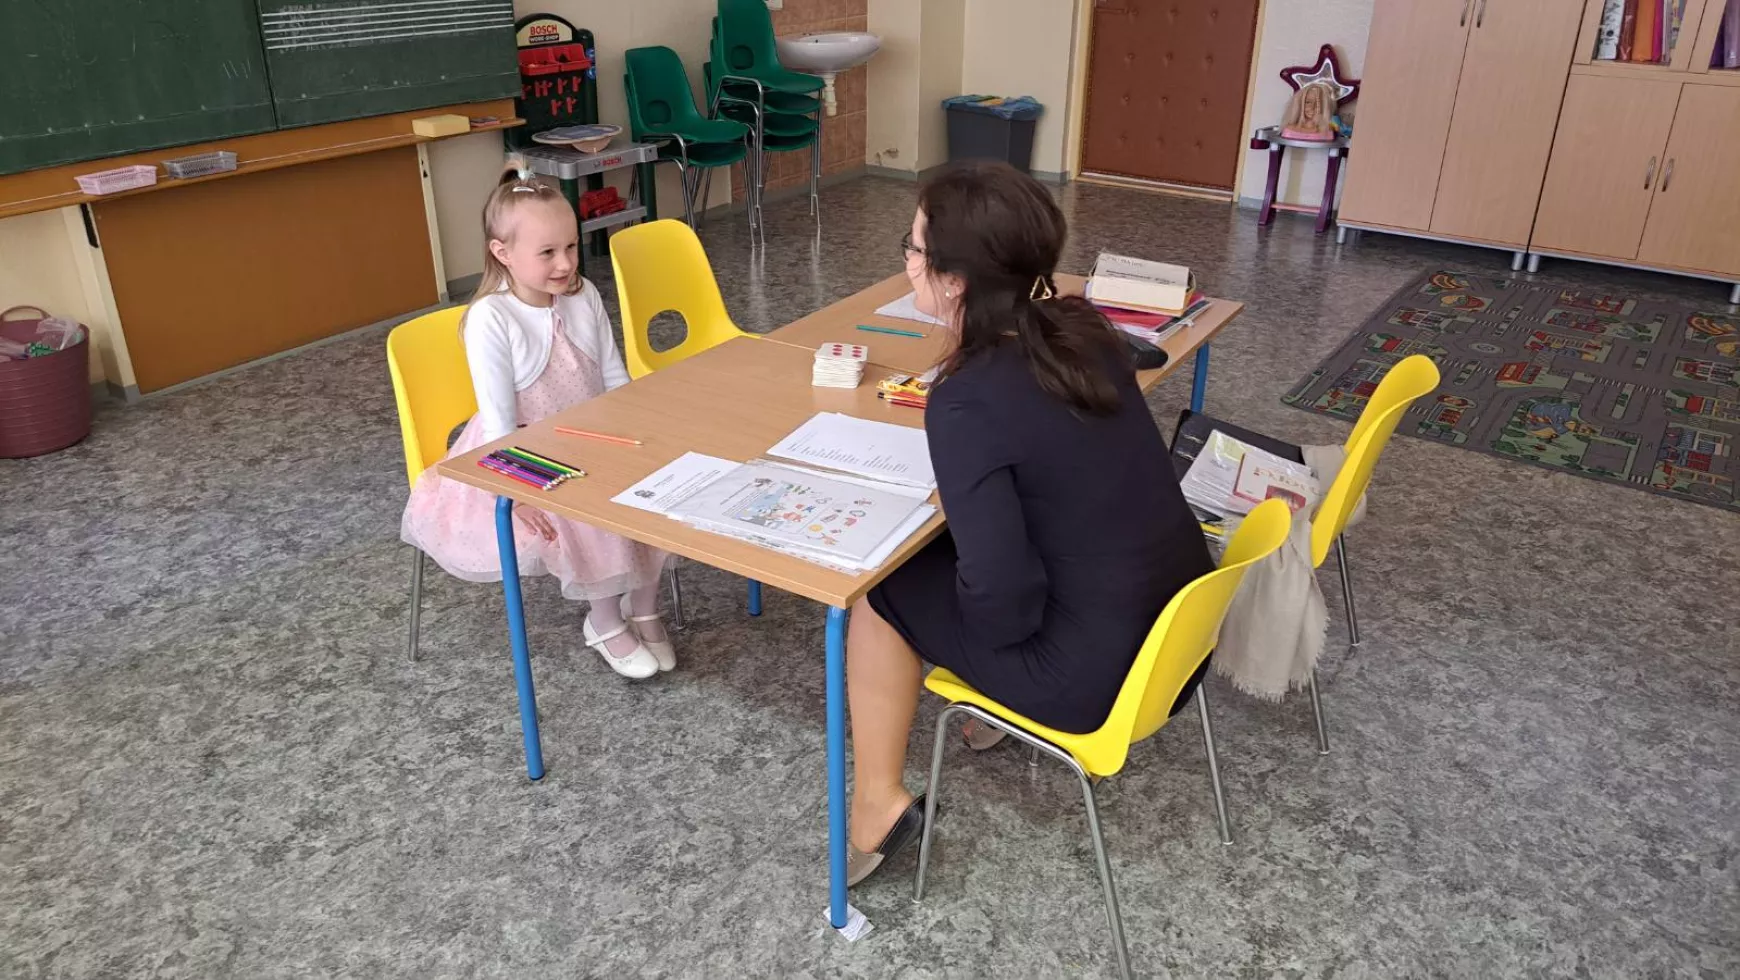 A naszvadi magyar alapiskola egy első osztállyal kezdi majd az új tanévet